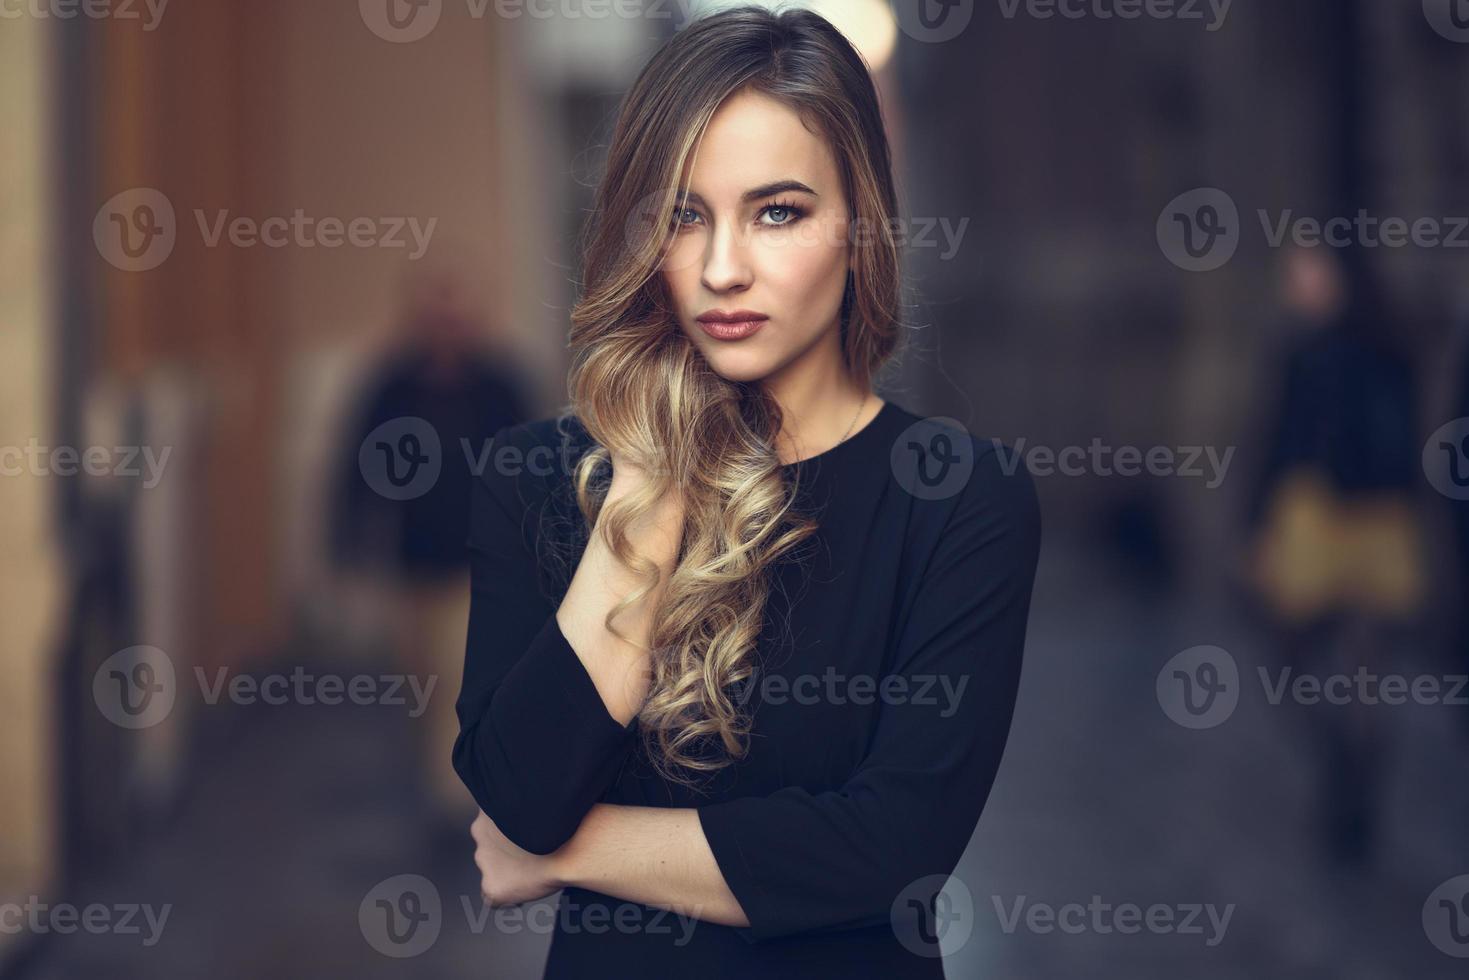 bella bionda donna russa in background urbano foto